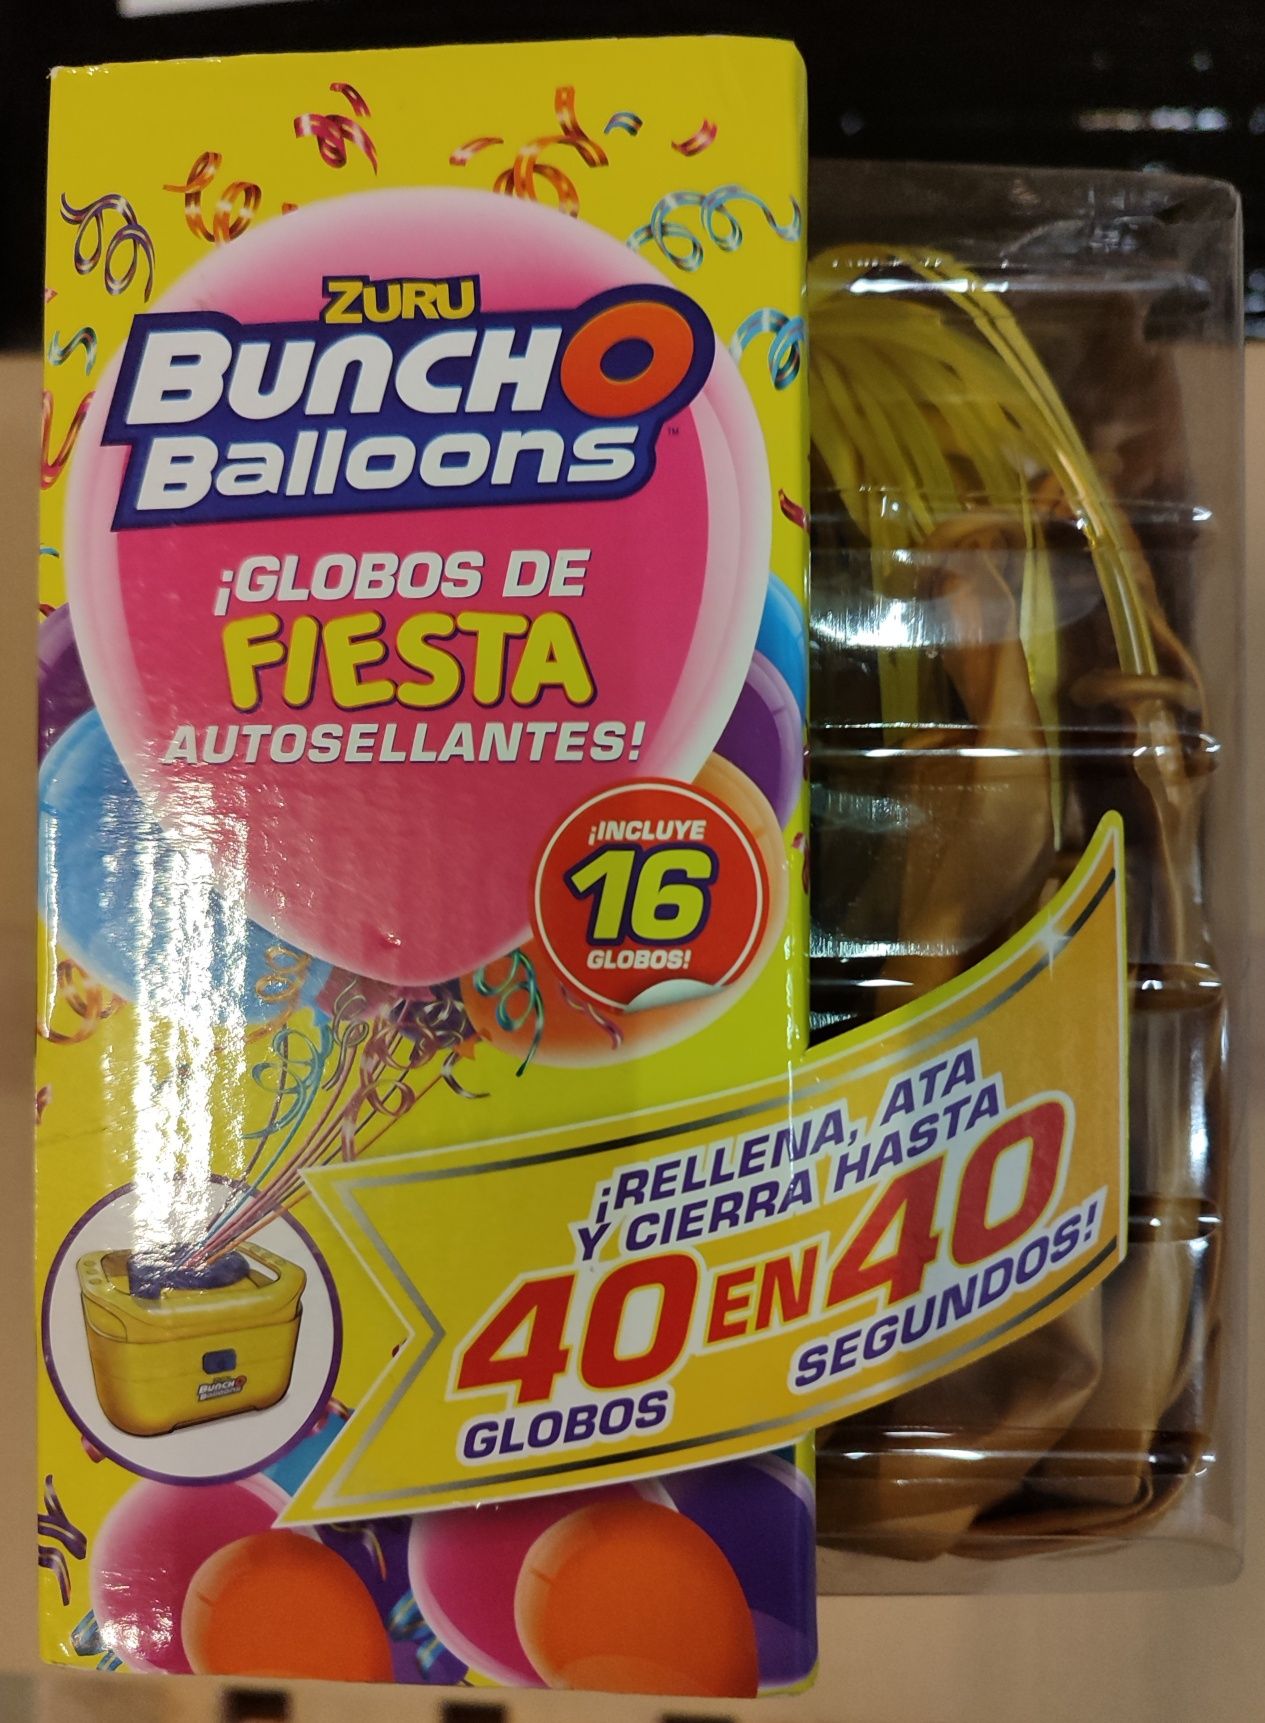 Máquina de encher balões, insufláveis eléctrica